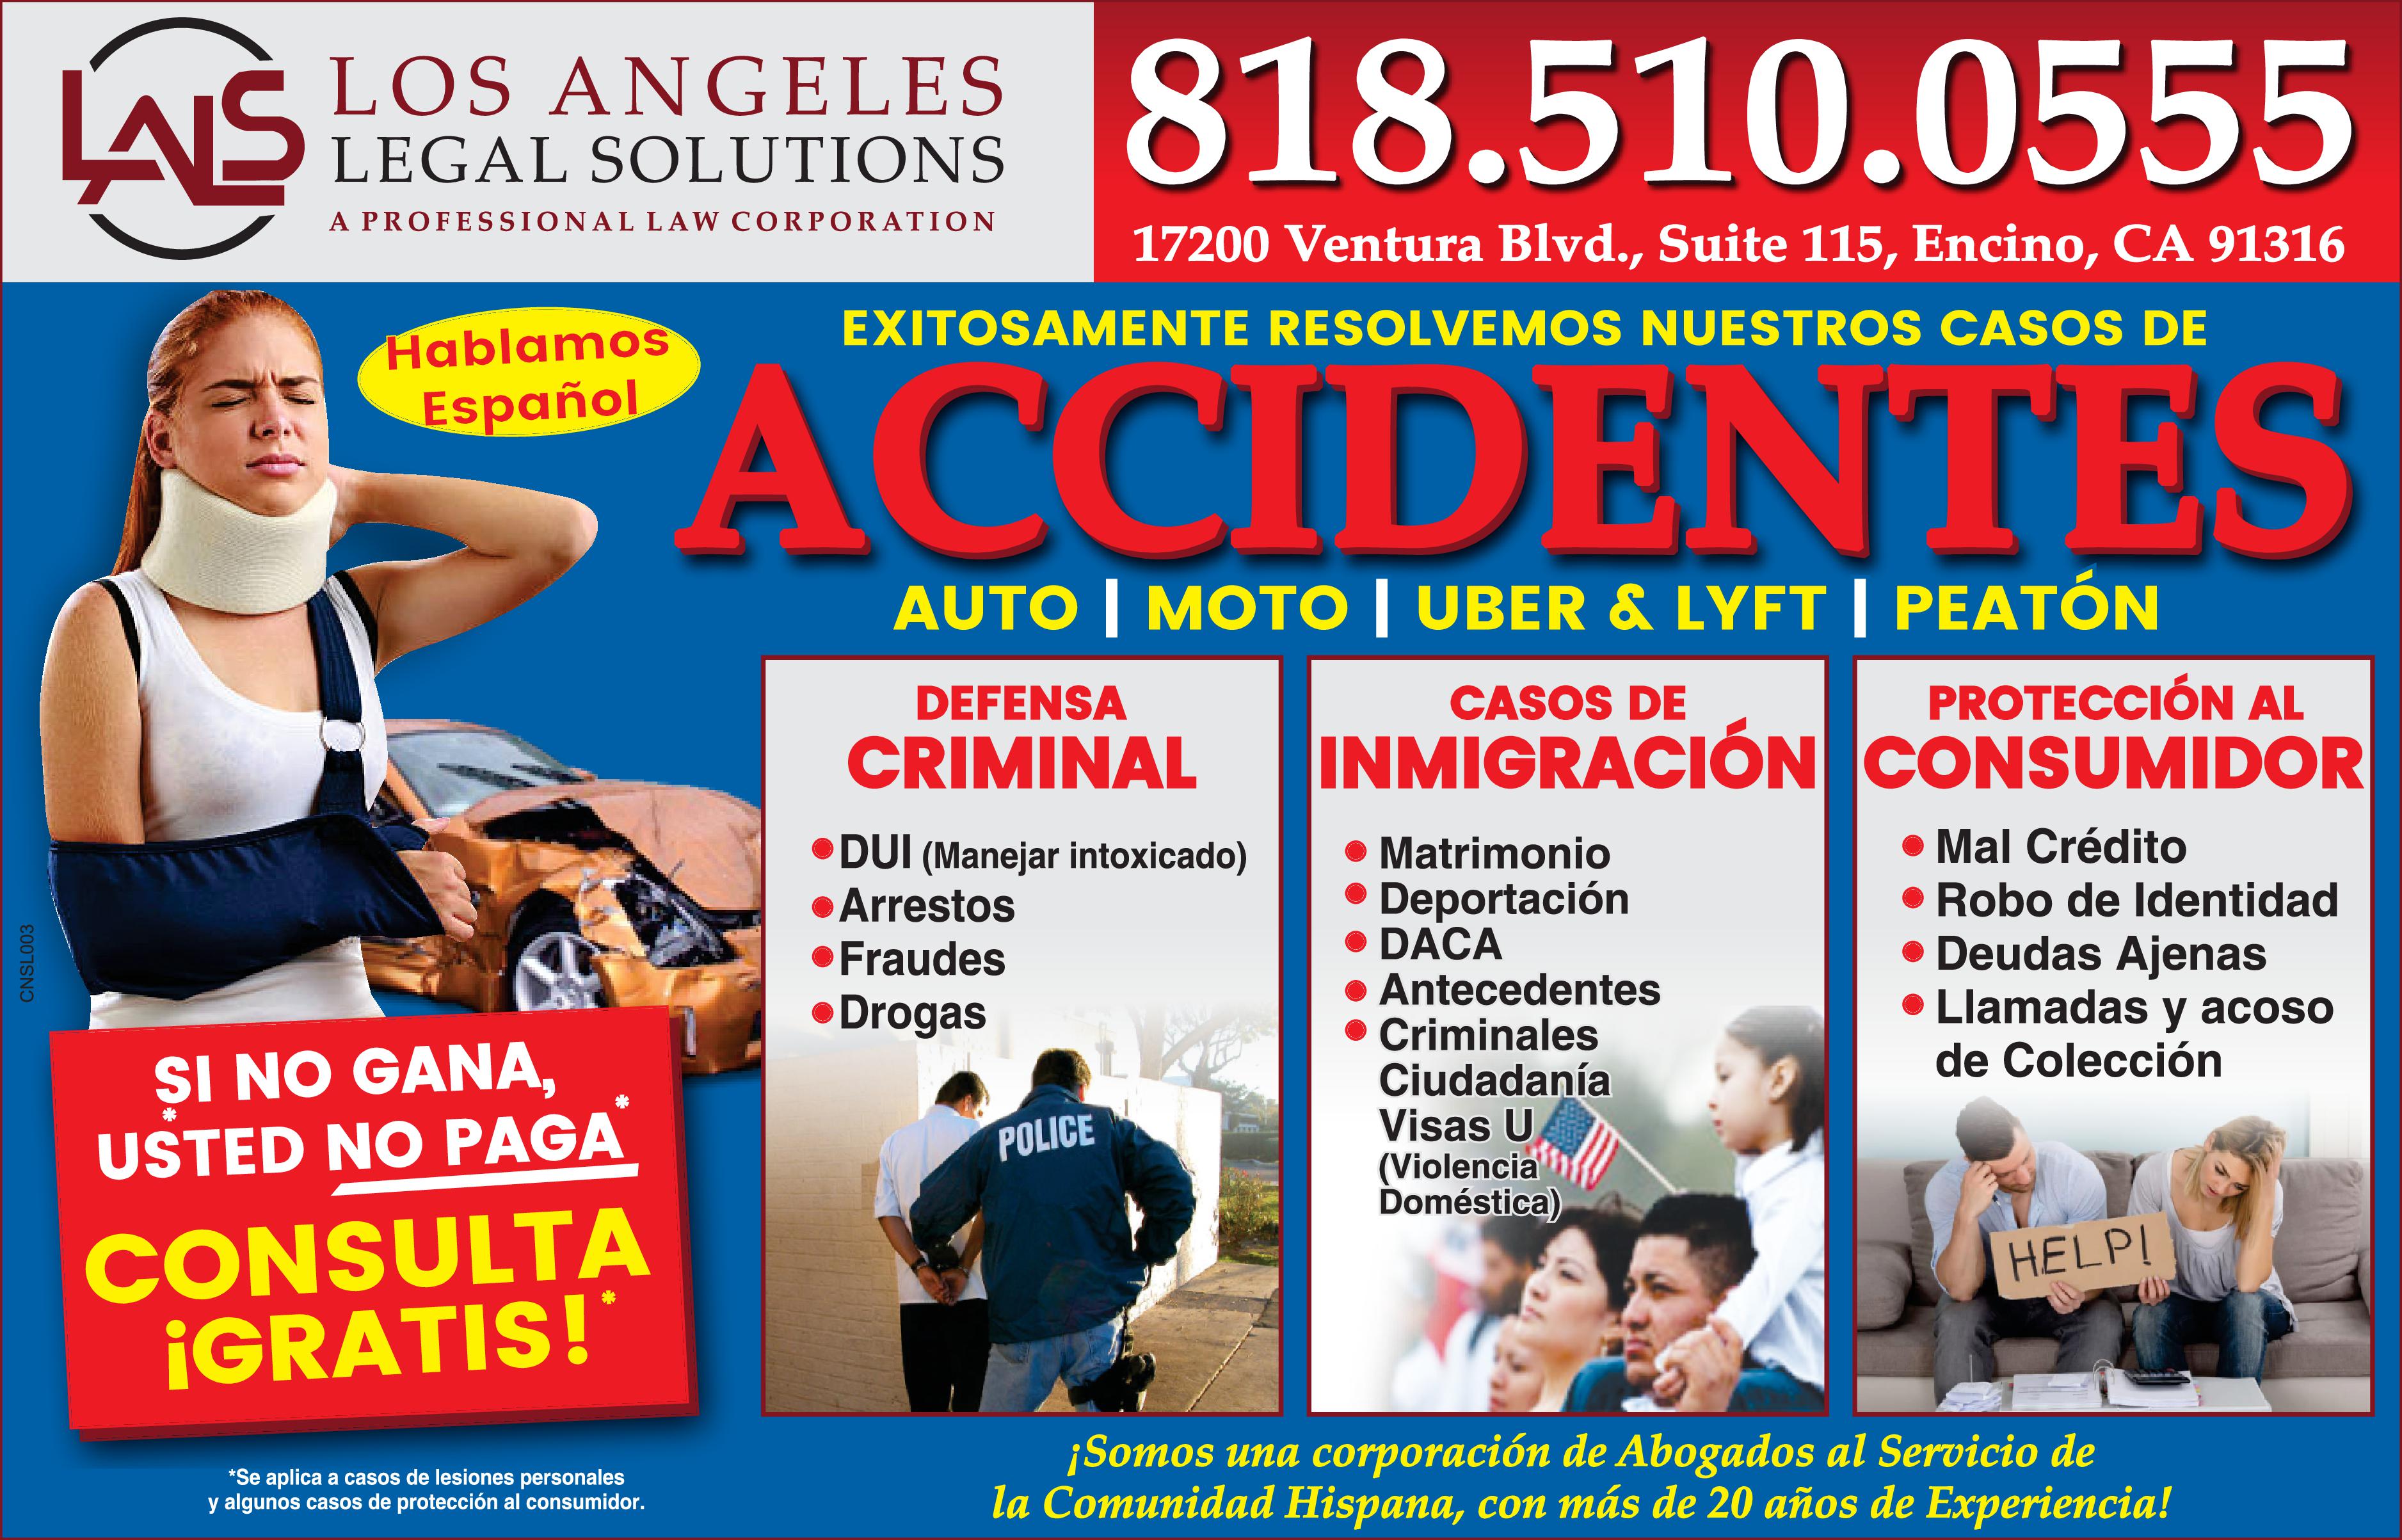 LAIS LOS ANGELES 818.510.0555 LEGAL SOLUTIONS PROFESSIONAL LAW CORPORATION 17200 Ventura Blvd., Suite 115, Encino, CA 91316 EXITOSAMENTE RESOLVEMOS NUESTROS CASOS DE Hablamos ACCIDENTES Español AUTO MOTO UBER LYFT PEATÓN DEFENSA CASOS DE PROTECCIÓN AL CRIMINAL INMIGRACIÓN CONSUMIDOR Mal Crédito Robo de Identidad Deudas Ajenas Llamadas acoso de Colección DUI (Manejar intoxicado) Arrestos Matrimonio Deportación DACA Antecedentes Criminales Ciudadanía Visas (Violencia Doméstica) Fraudes Drogas SI NO GANA, USTED NO PAGA POLICE CONSULTA IGRATIS! HELP! ¡Somos una corporación de Abogados al Servicio de la Comunidad Hispana, con más de 20 años de Experiencia! *Se aplica casos de lesiones personales algunos casos de protección al consumidor. CNSLO03